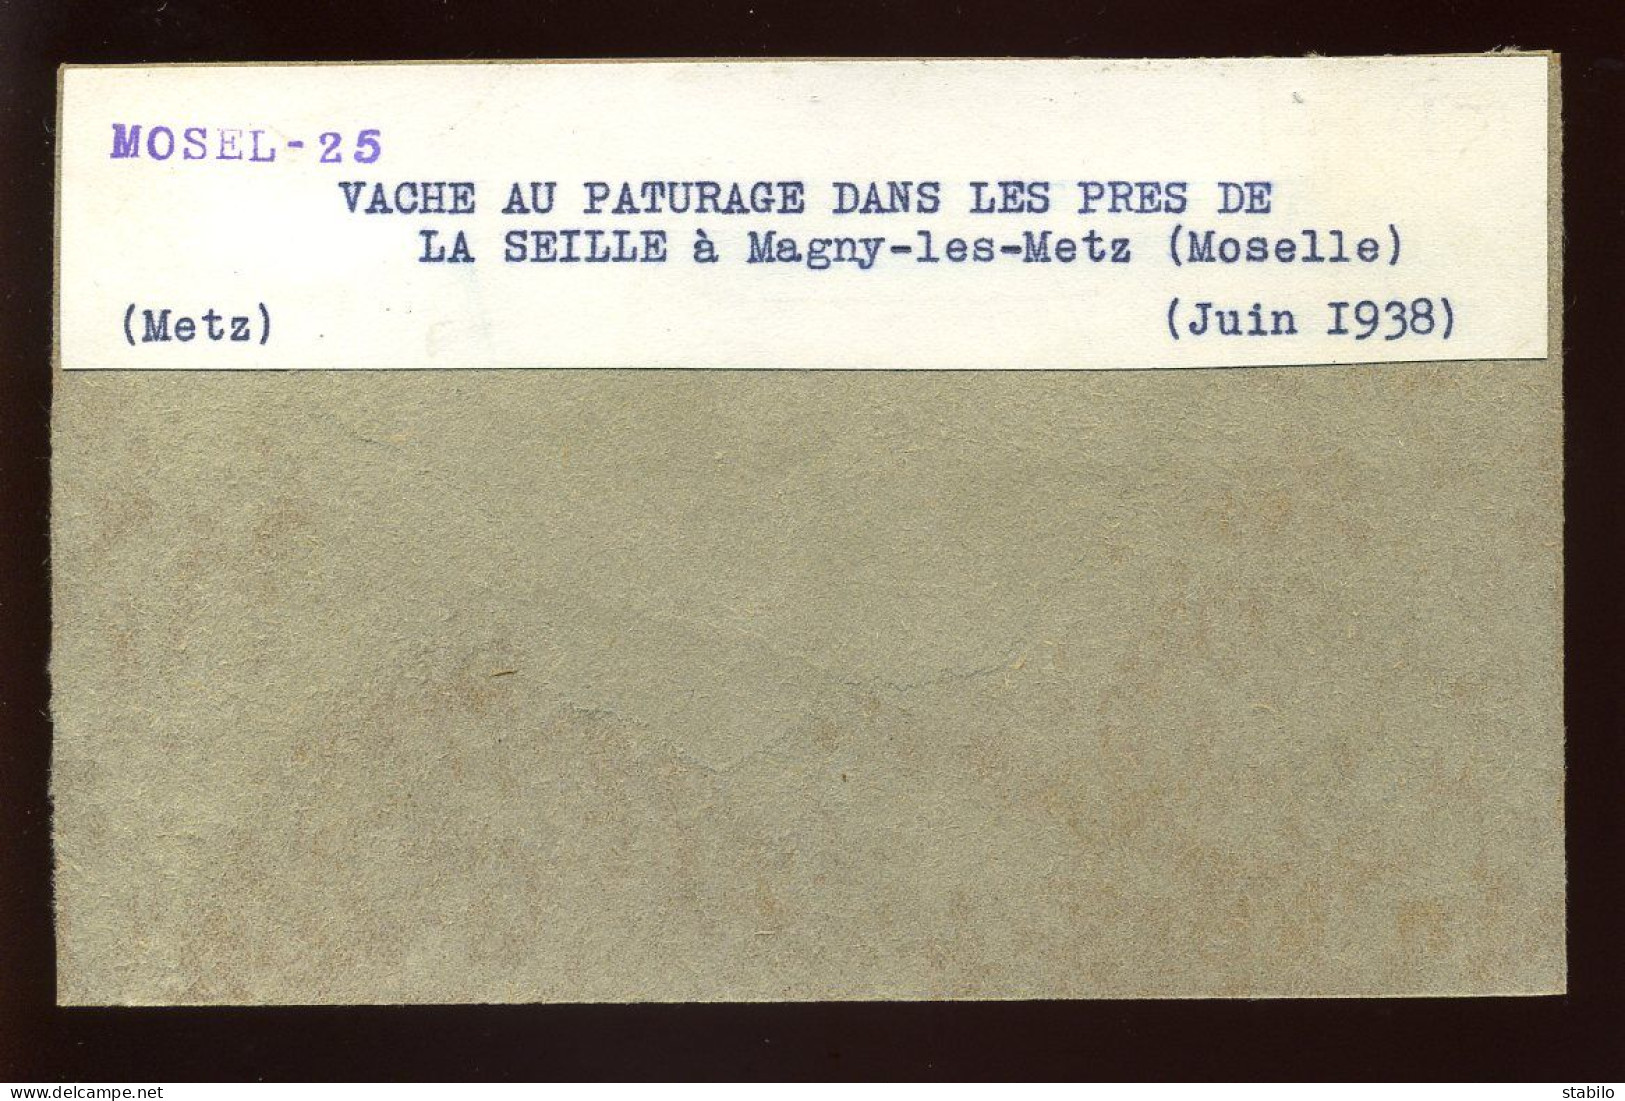 MAGNY-LES-METZ (MOSELLE) - VACHE AU PATURAGE DANS LES PRES DE LA SEILLE - JUIN 1938 - FORMAT :13 X 8.5 CM - Orte